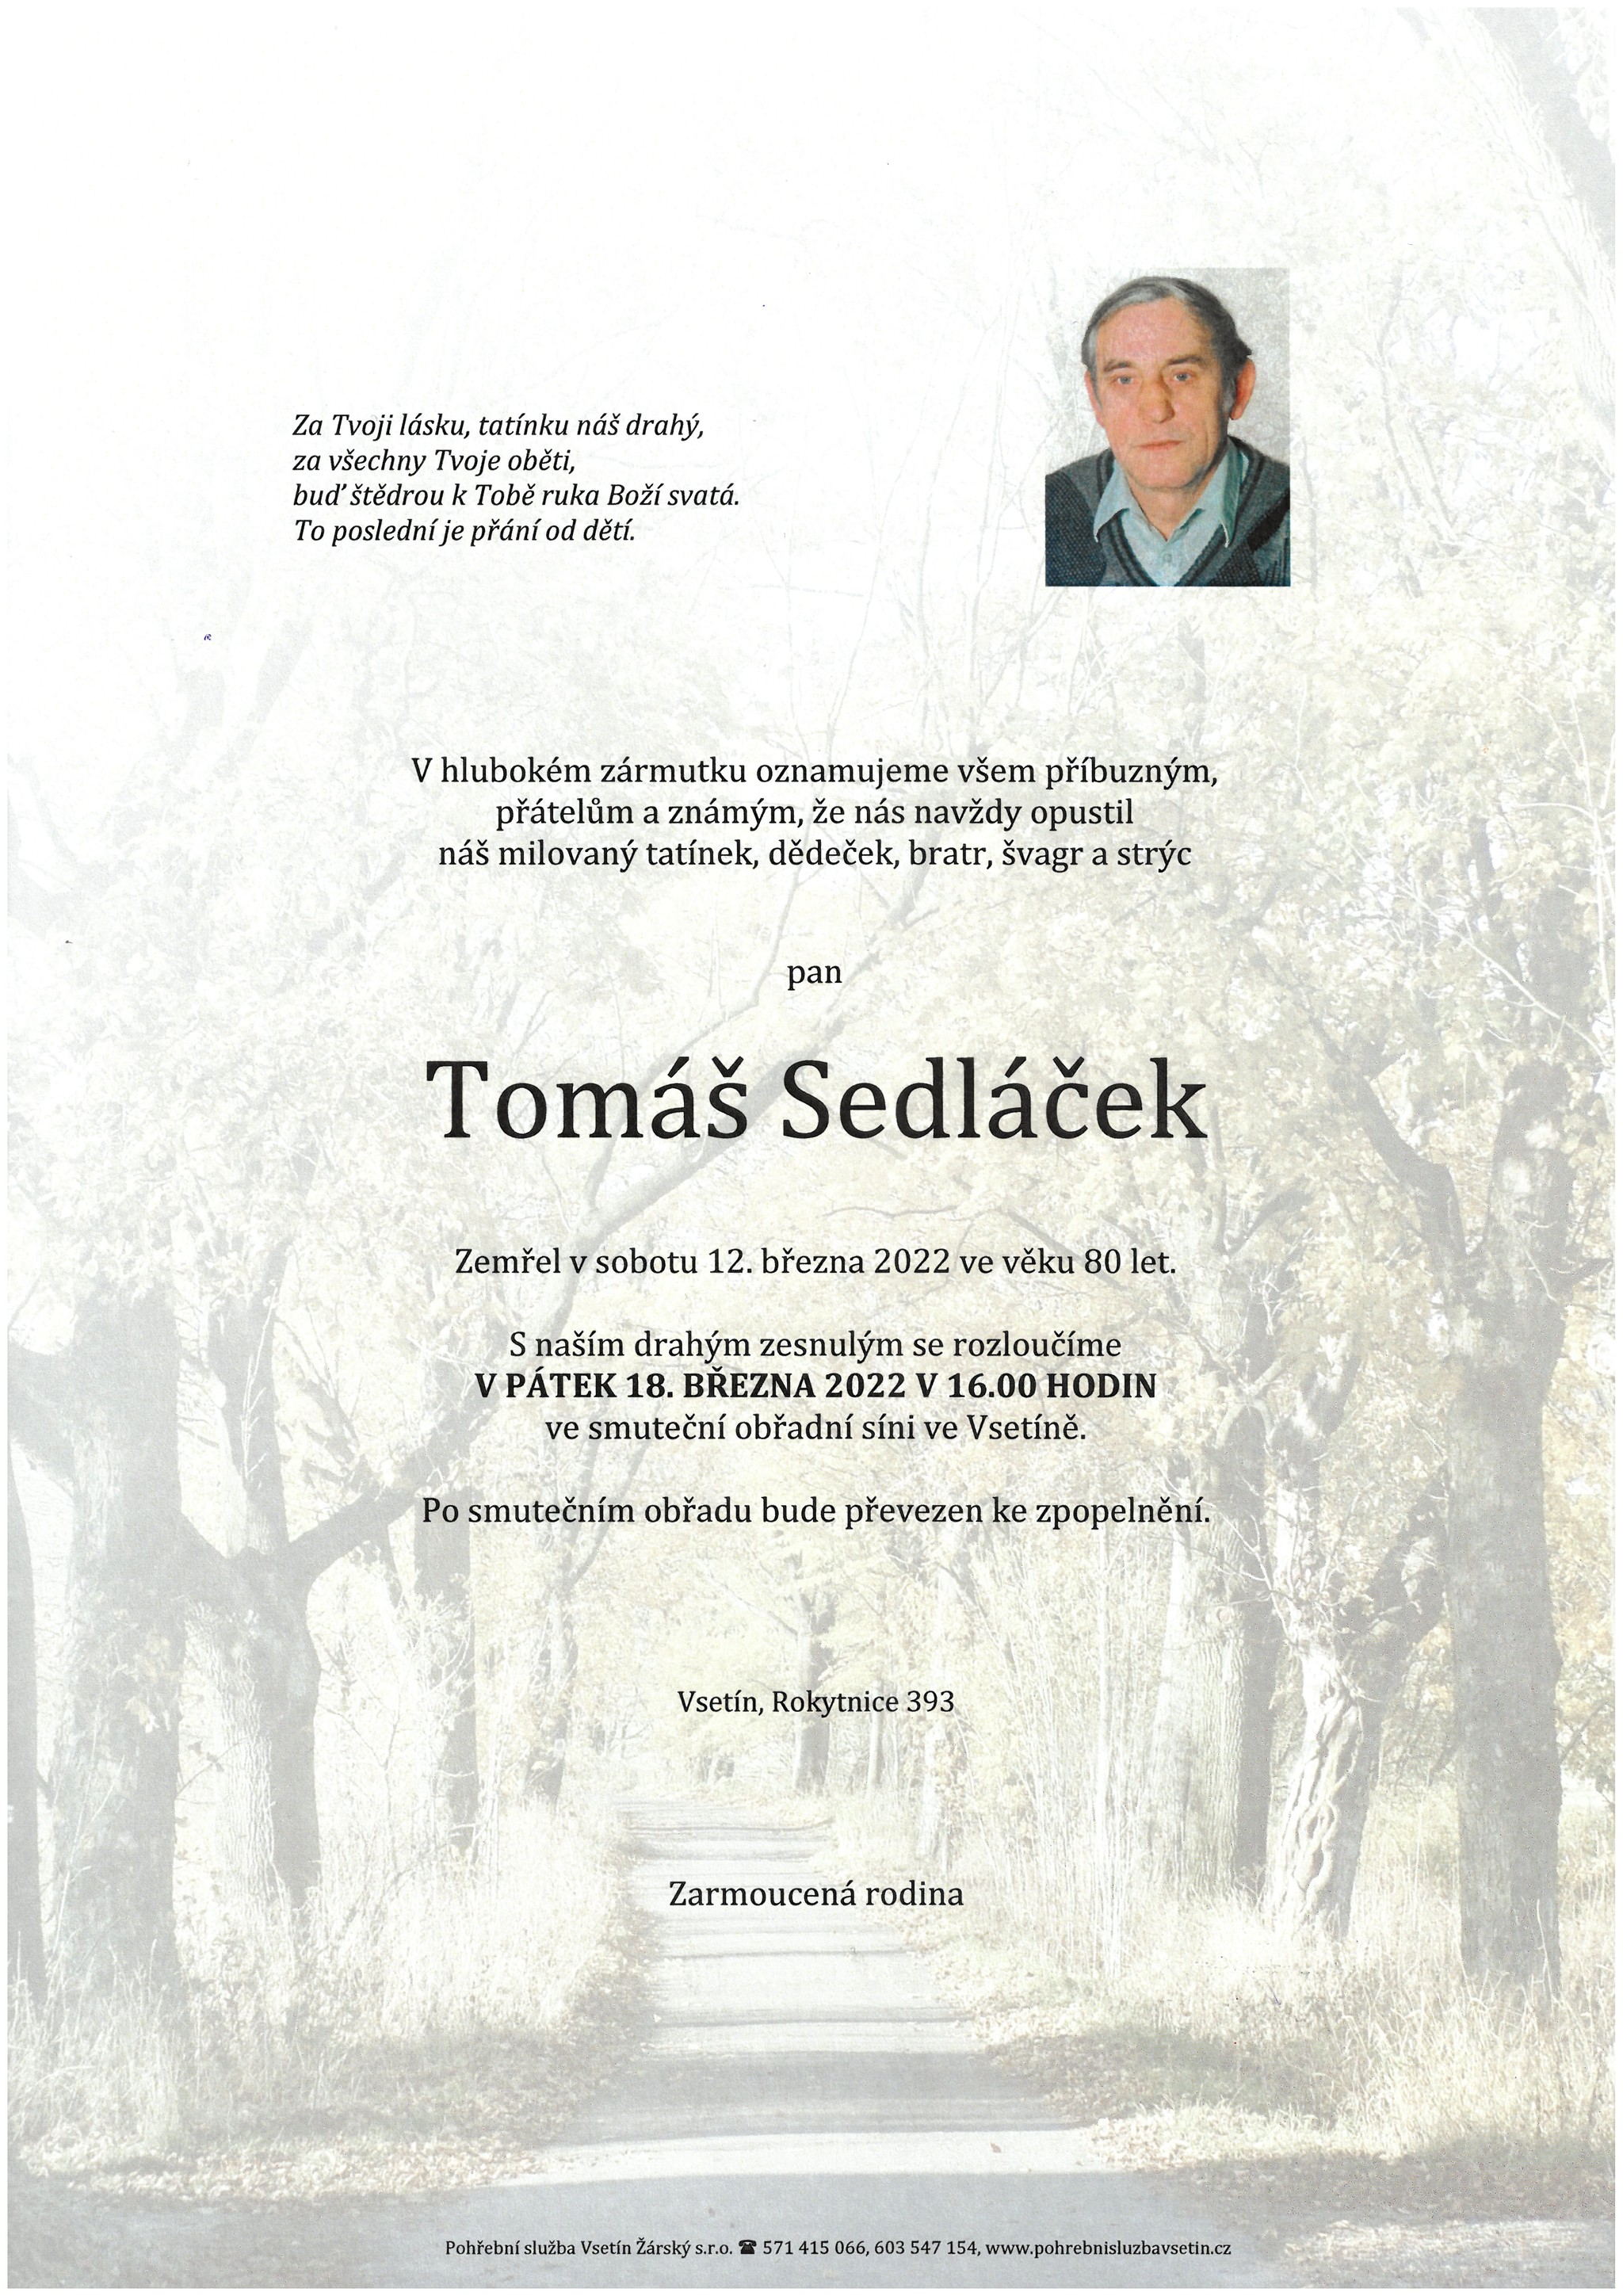 Tomáš Sedláček